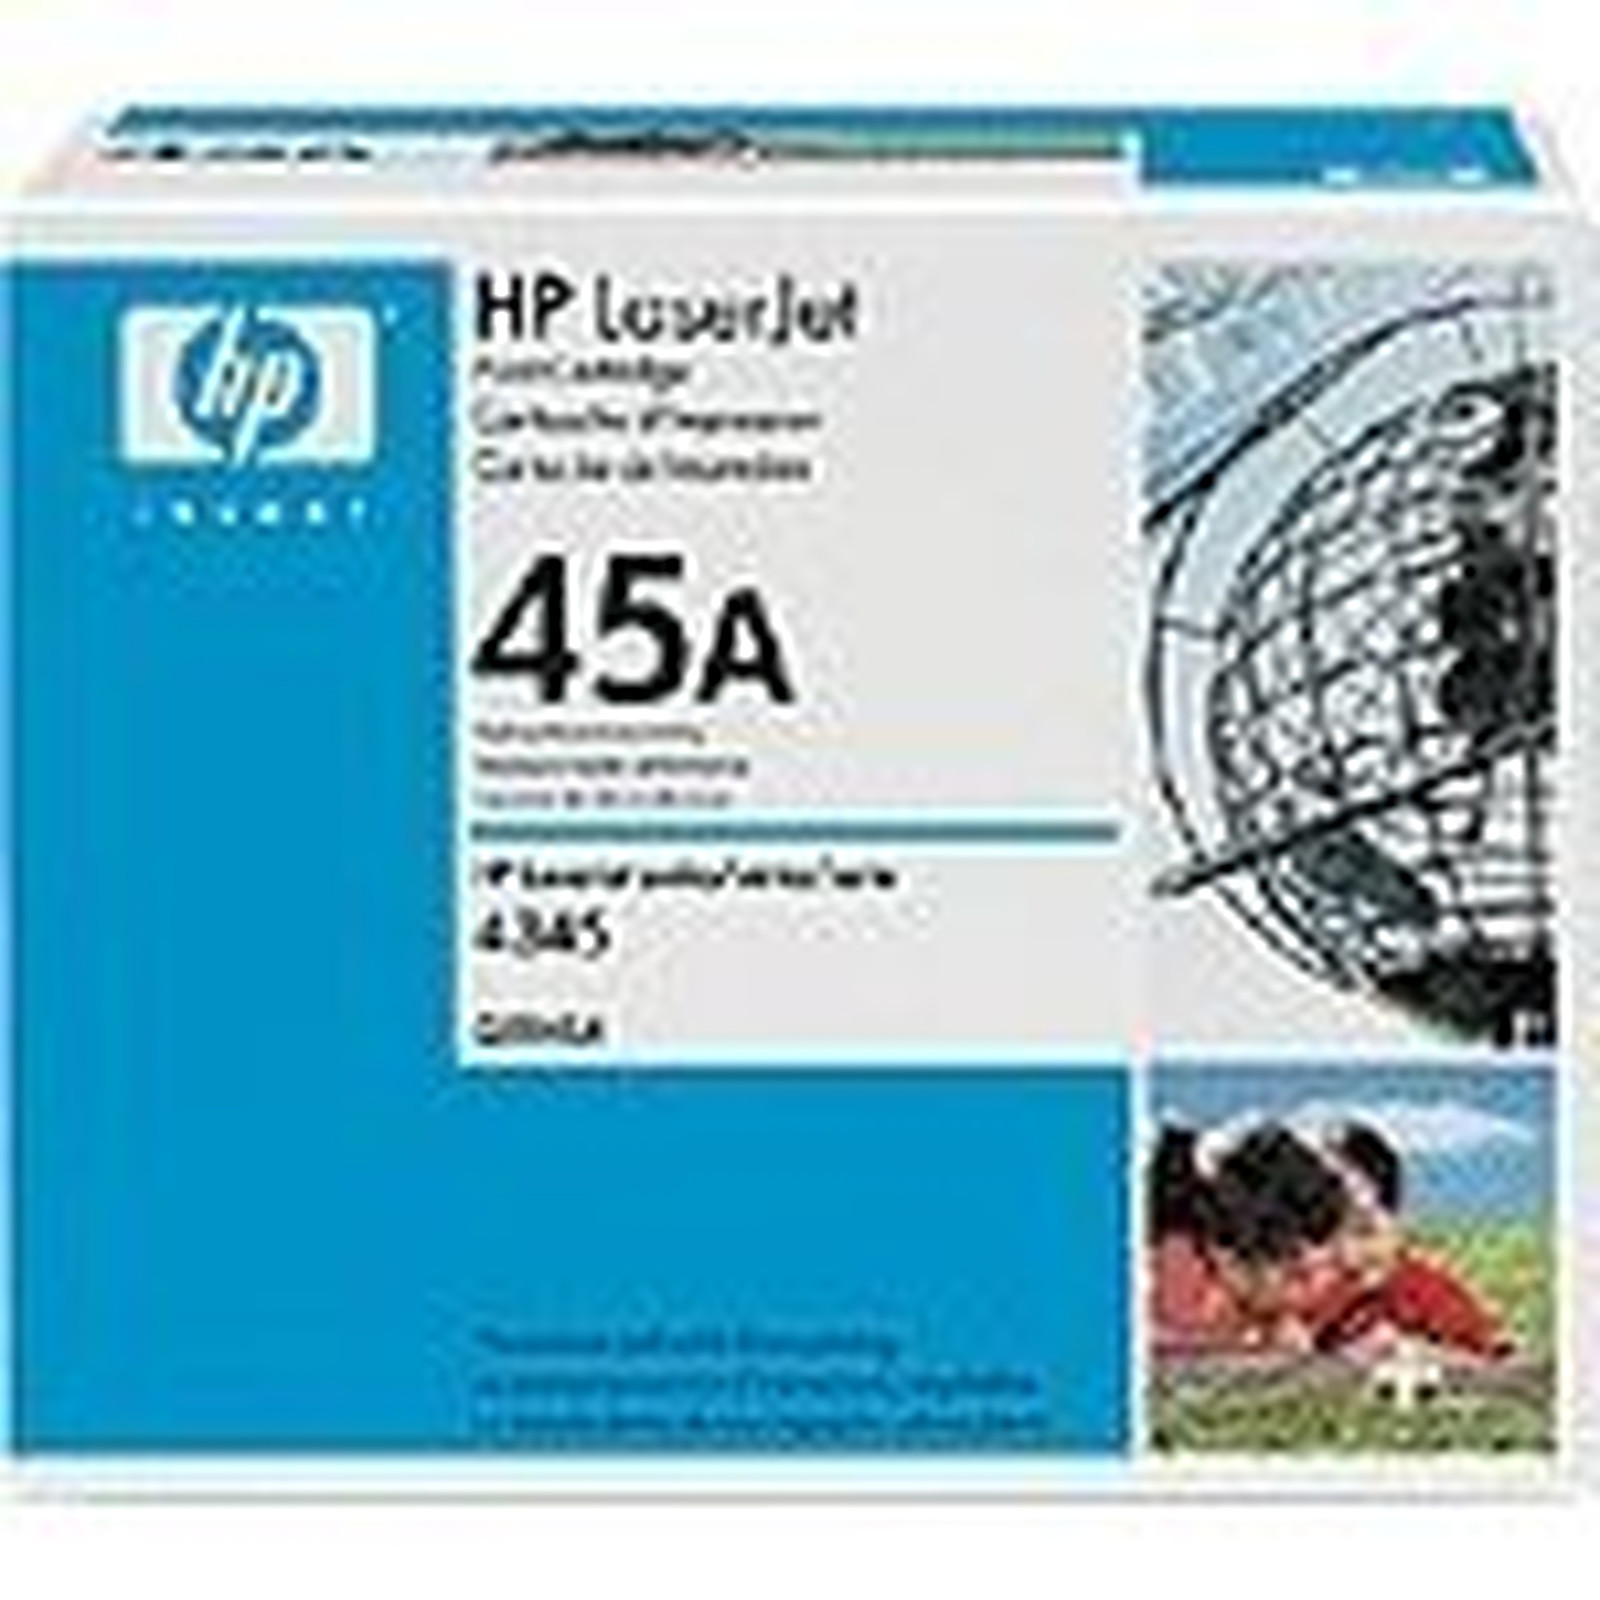 HP Q5945A - Toner imprimante HP